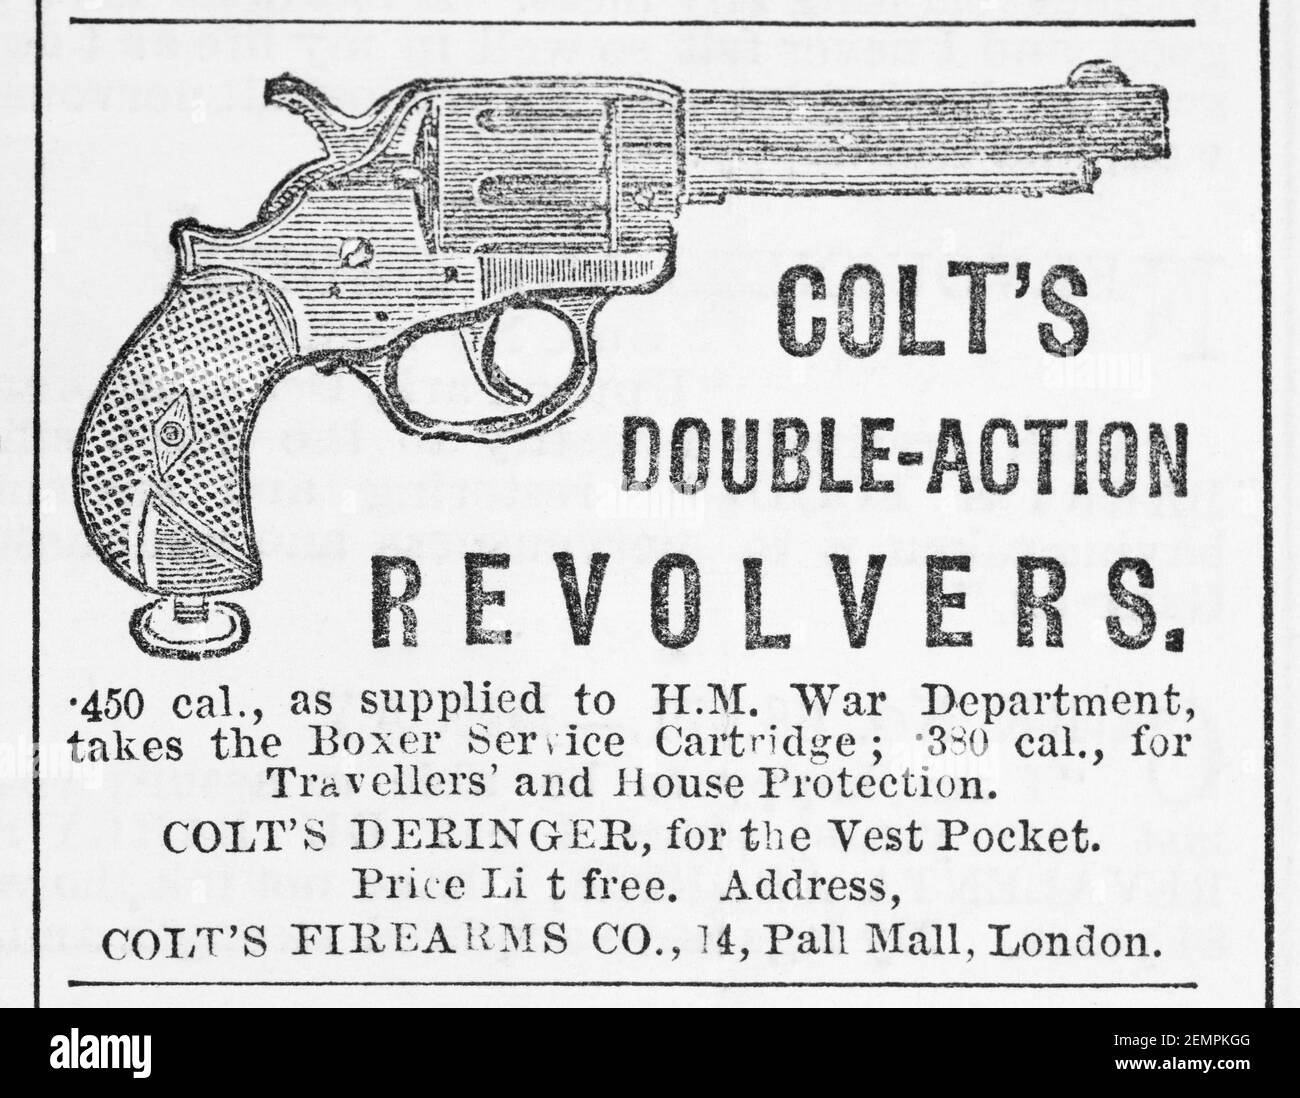 Antiguo anuncio de armas de fuego de Colt en el Reino Unido de 1880 - antes de los albores de los estándares de publicidad y cuando las armas de fuego fácilmente disponibles. Historia de la publicidad, viejos anuncios. Foto de stock